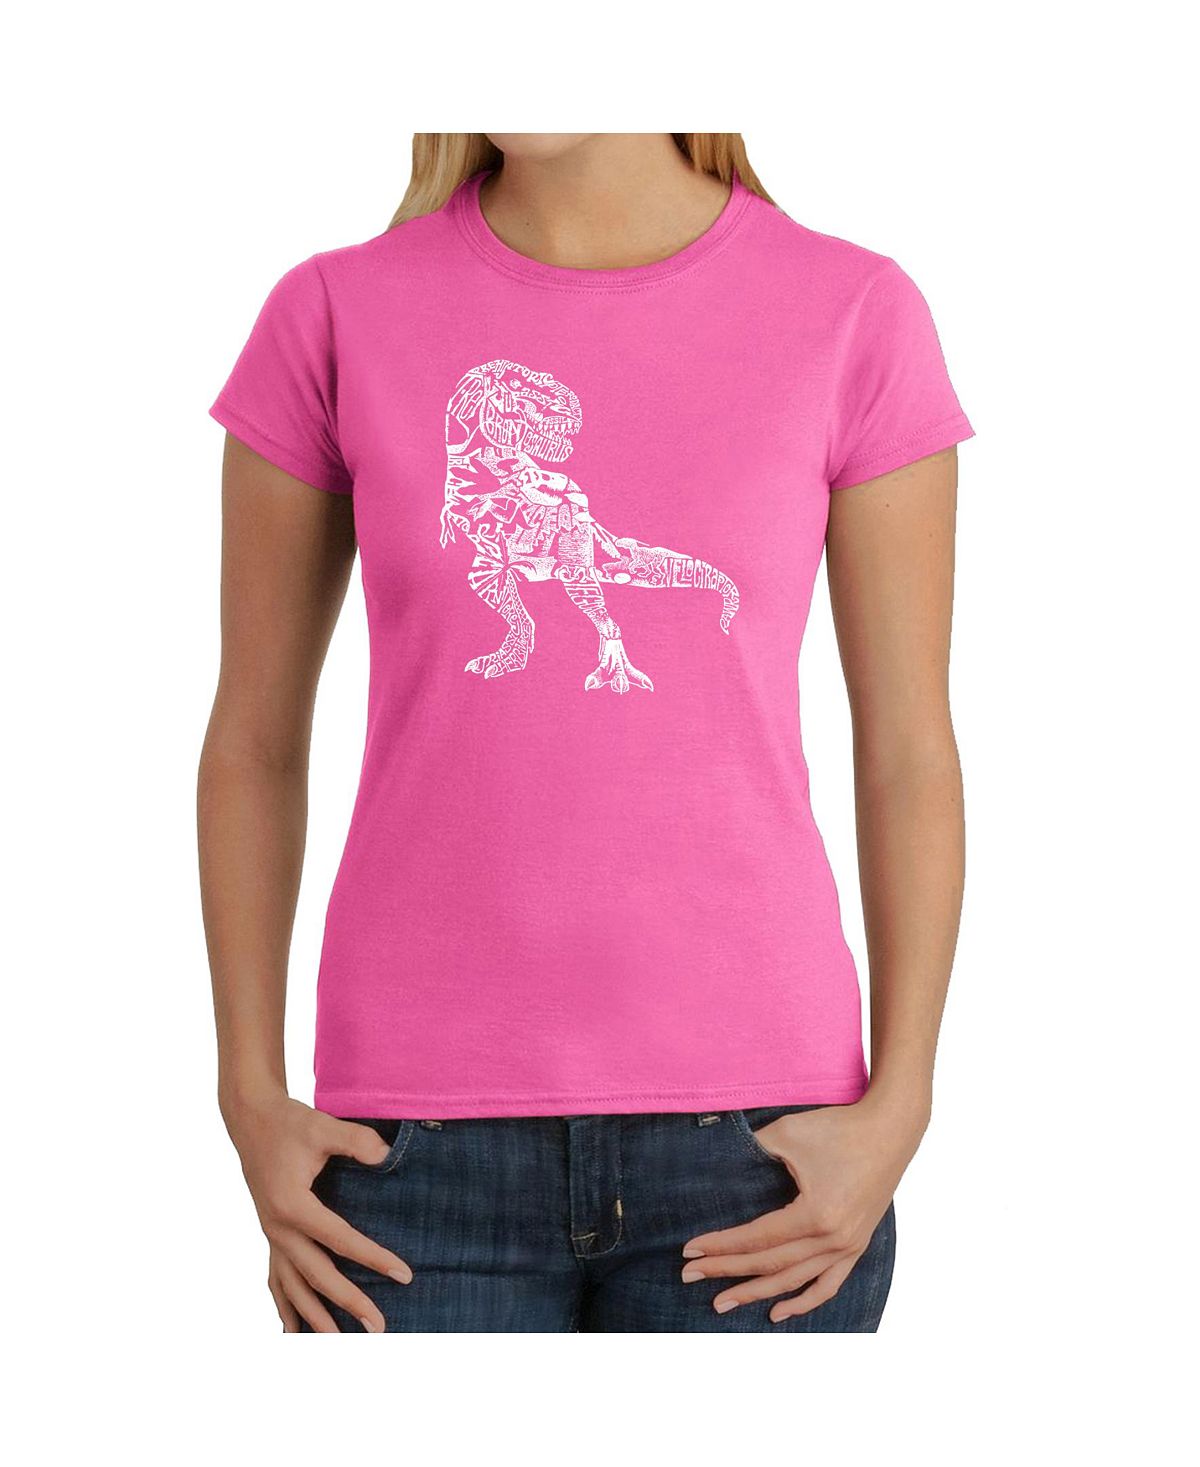 Женская футболка word art - динозавр слова и картинки LA Pop Art, розовый